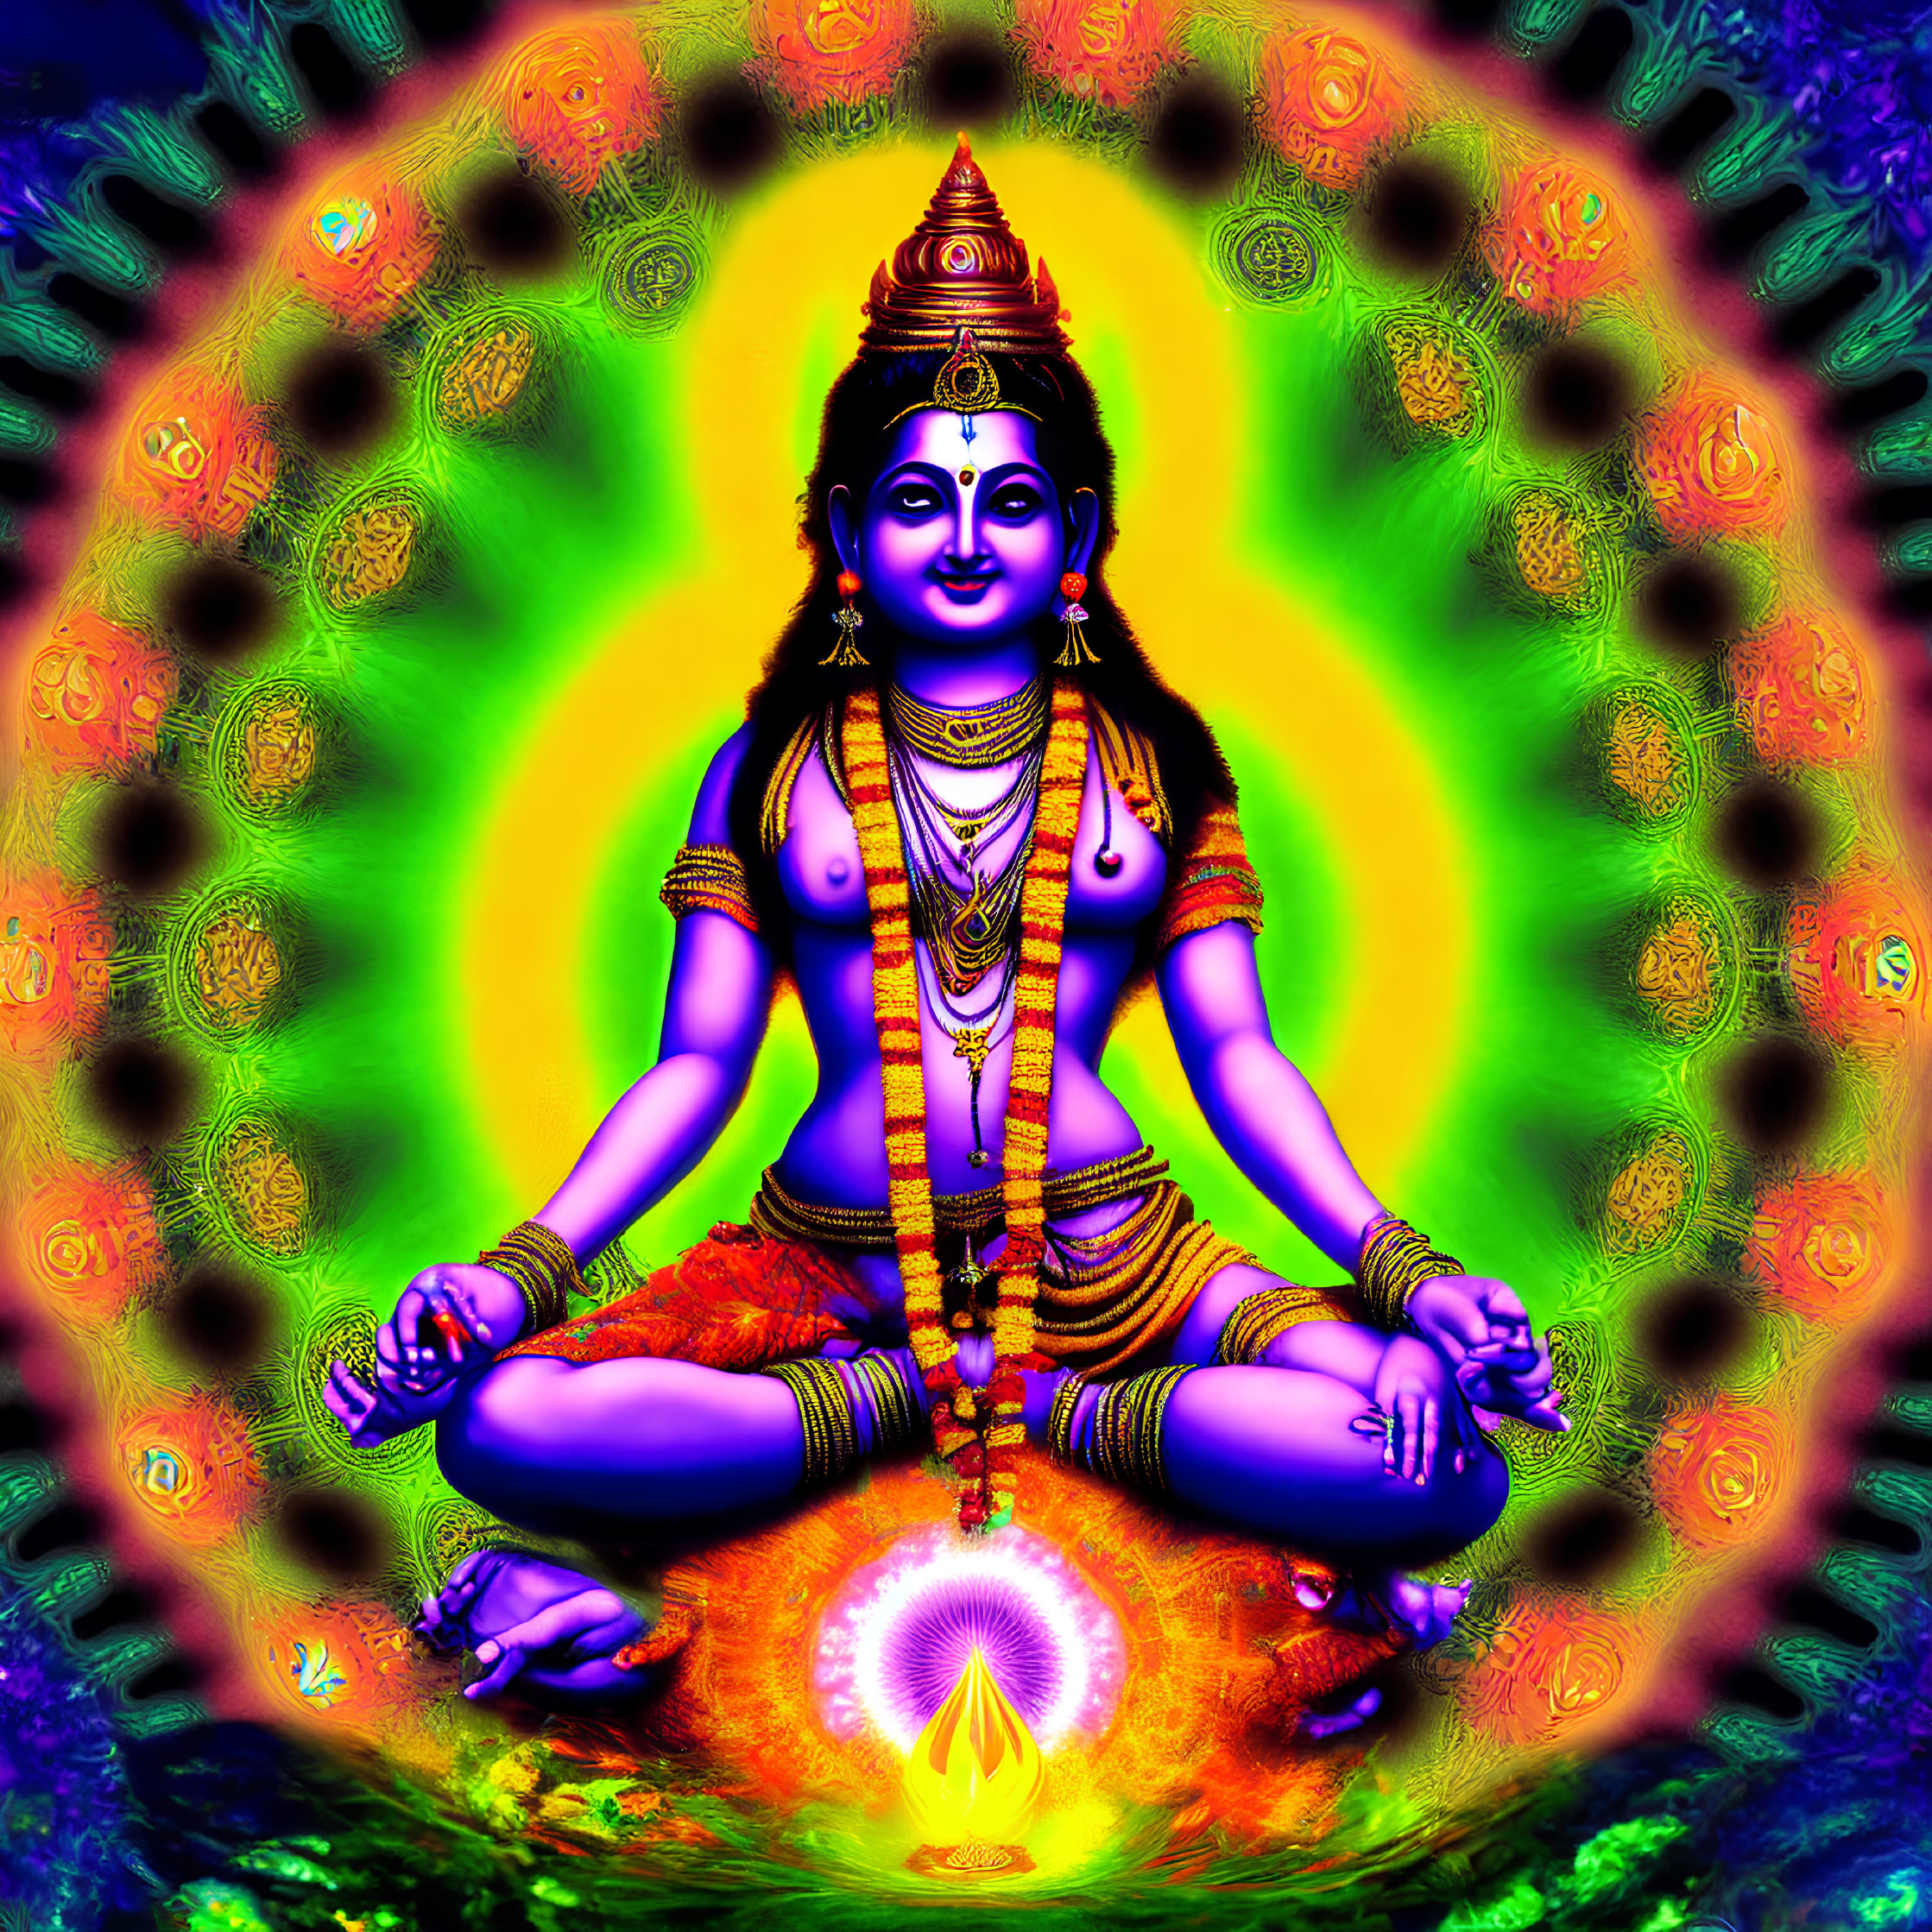 Vivid psychedelic deity meditation illustration